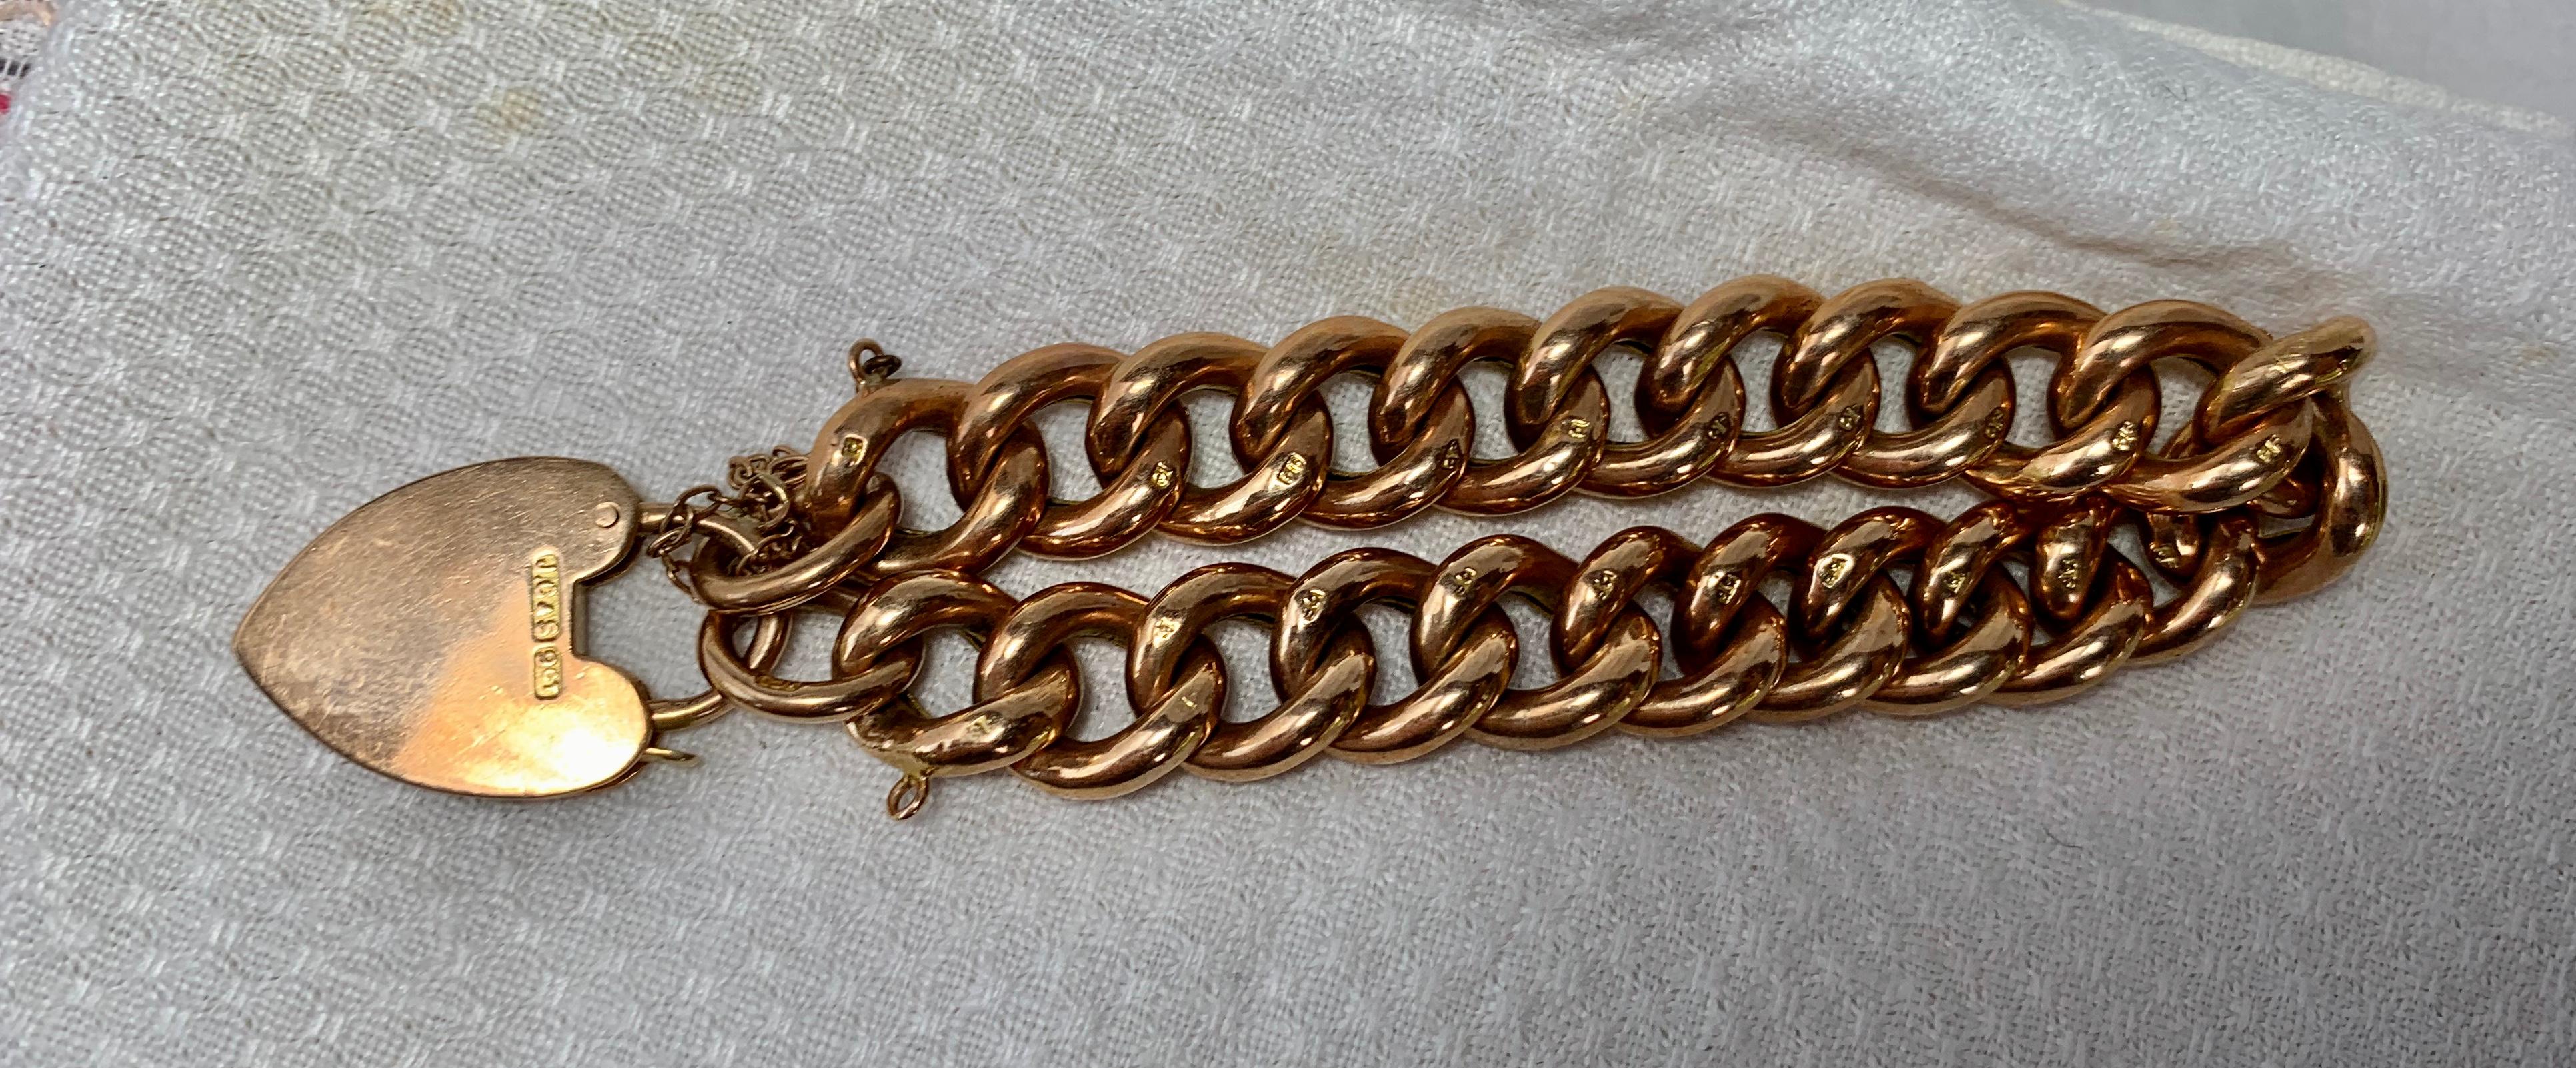 Ein wunderschönes viktorianisches 9 Karat Gold Gliederarmband, bestehend aus gravierten, geschwollenen Gliedern mit einem wunderschönen herzförmigen Verschluss.
Die Glieder sind jeweils mit stilisierten Rosen- und Blattmotiven handgraviert.
Mit